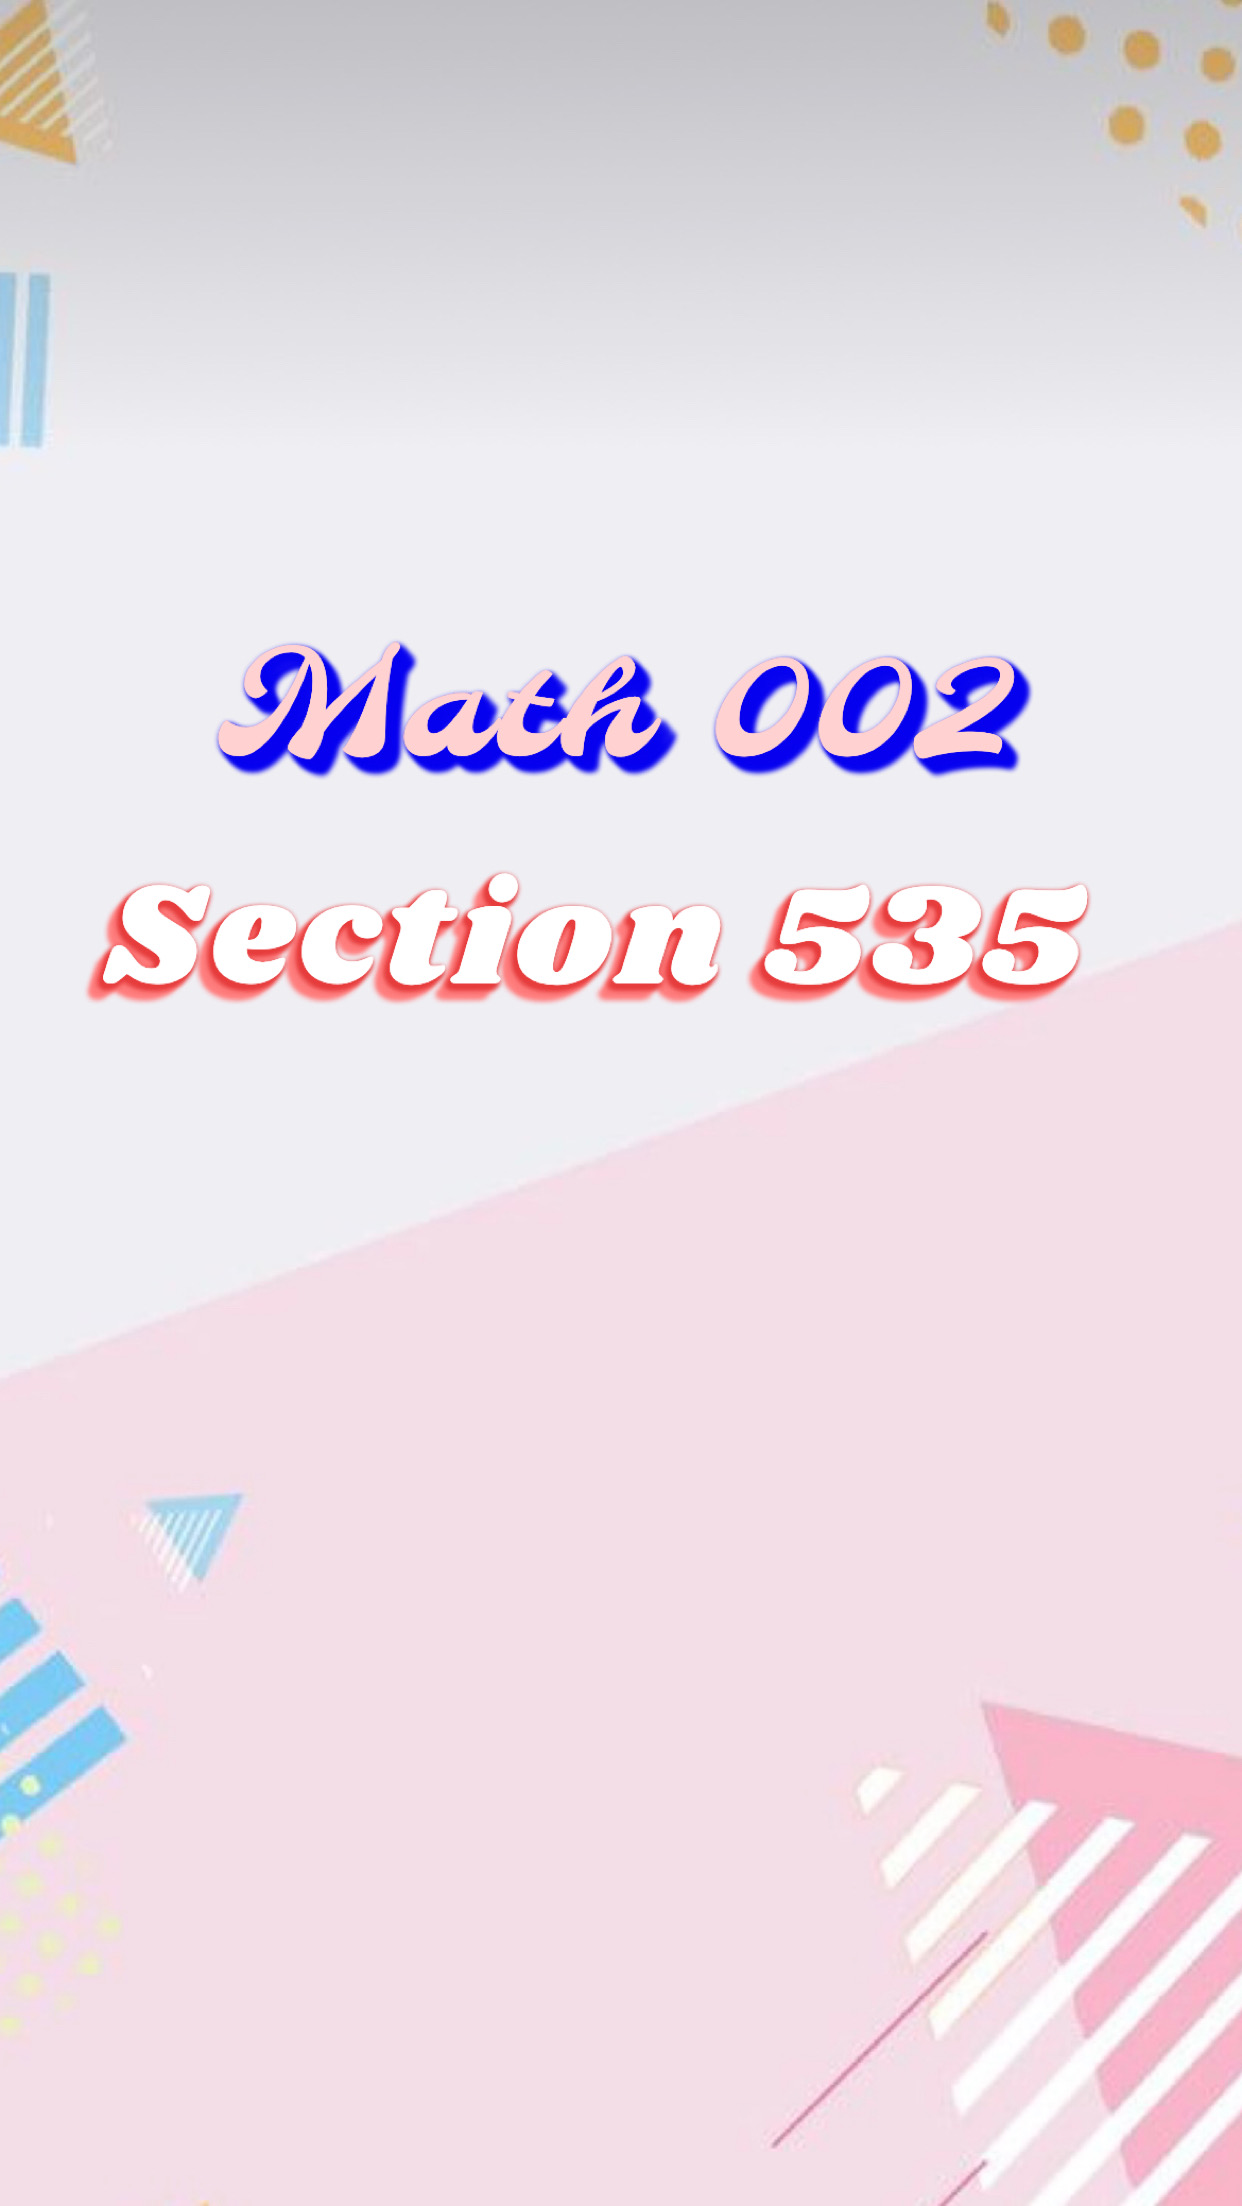 Preparatory Mathematics II ( MATH002 - Section  535 )